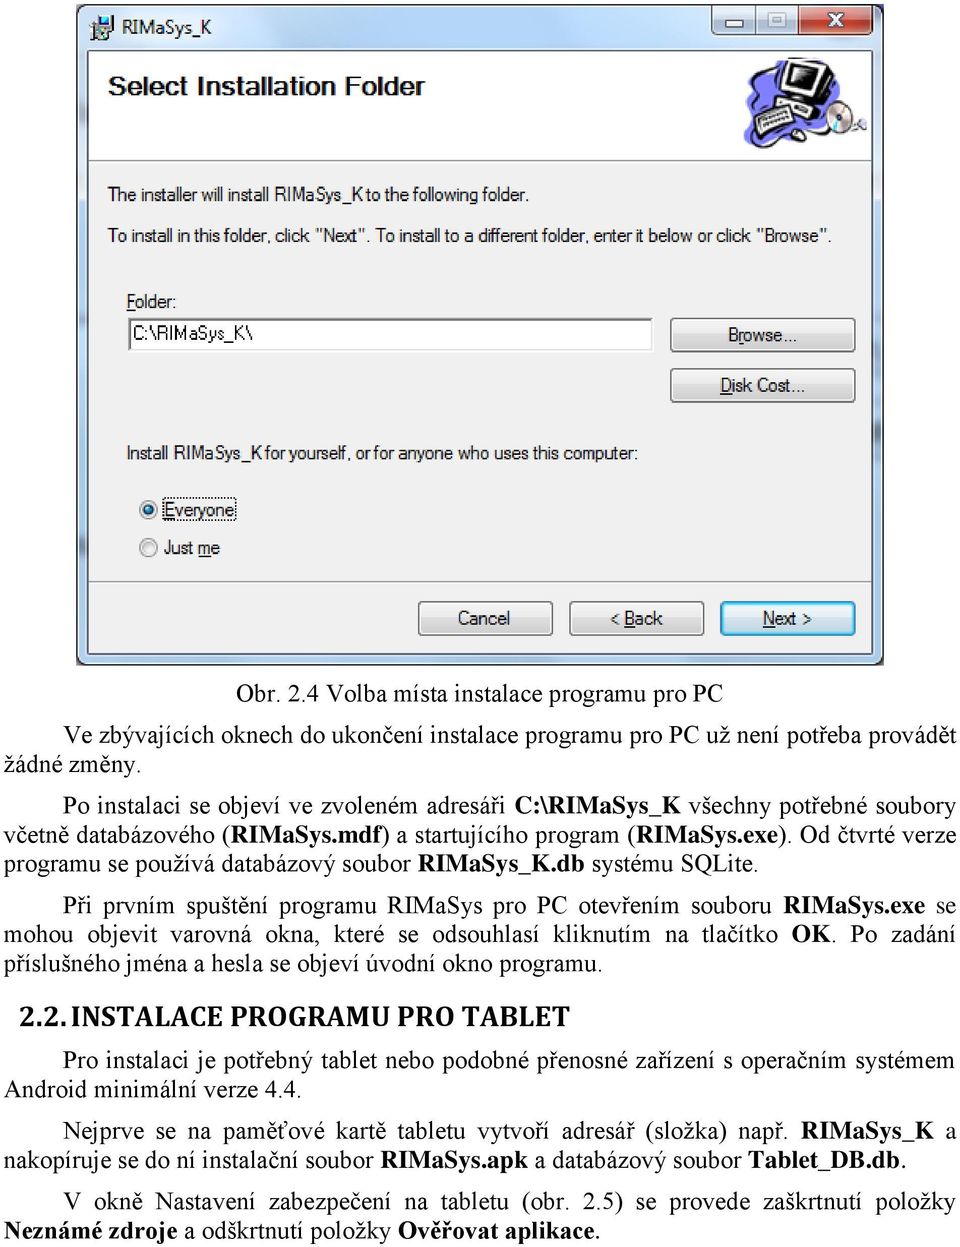 Od čtvrté verze programu se používá databázový soubor RIMaSys_K.db systému SQLite. Při prvním spuštění programu RIMaSys pro PC otevřením souboru RIMaSys.